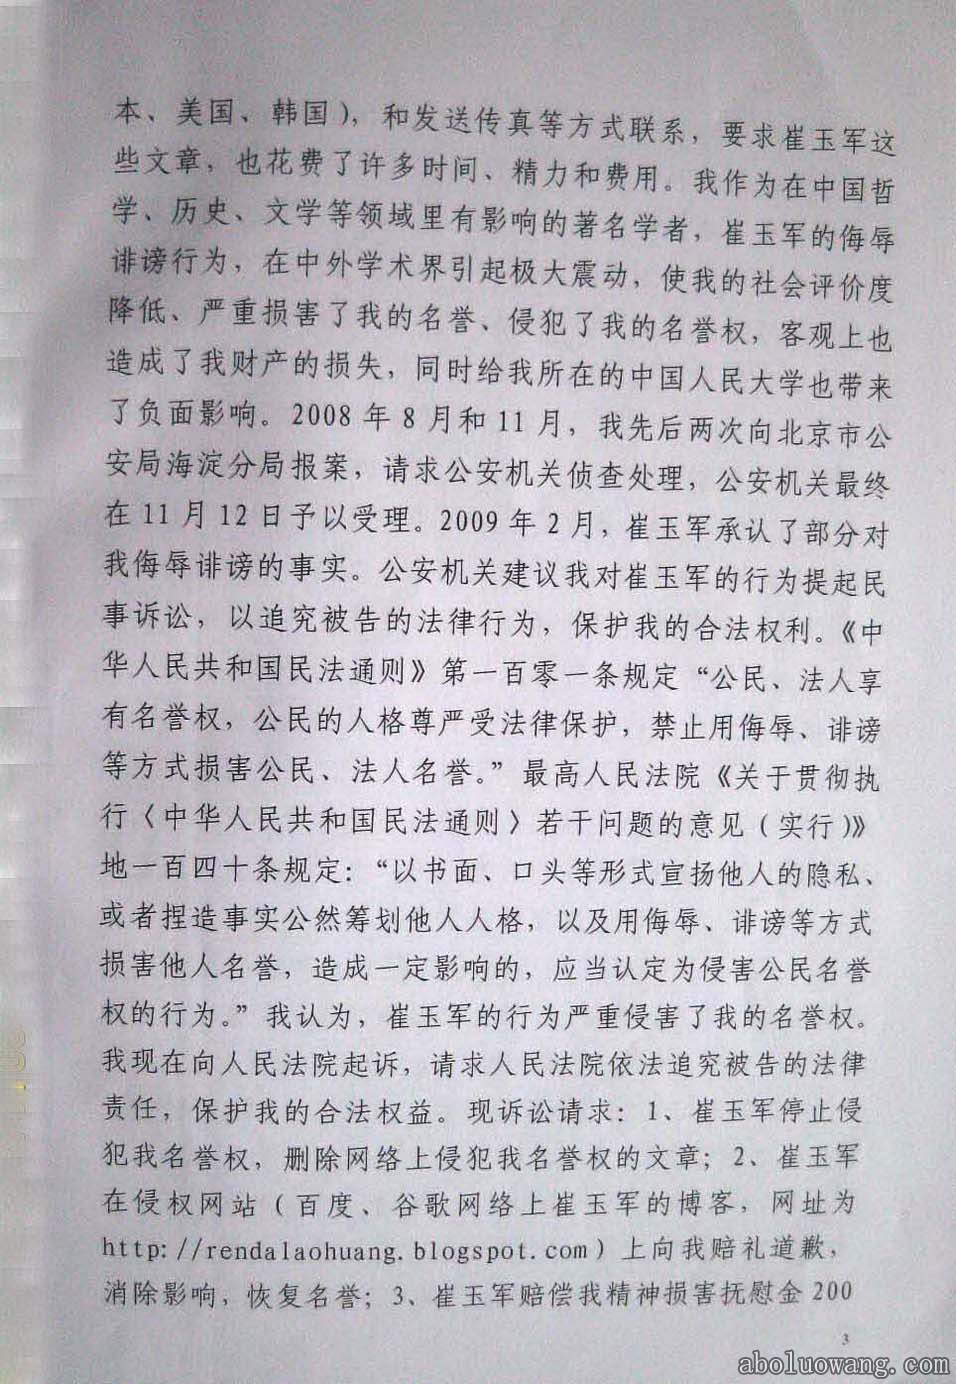 方克立弟子崔玉军诽谤刘正教授终审法律判决书3